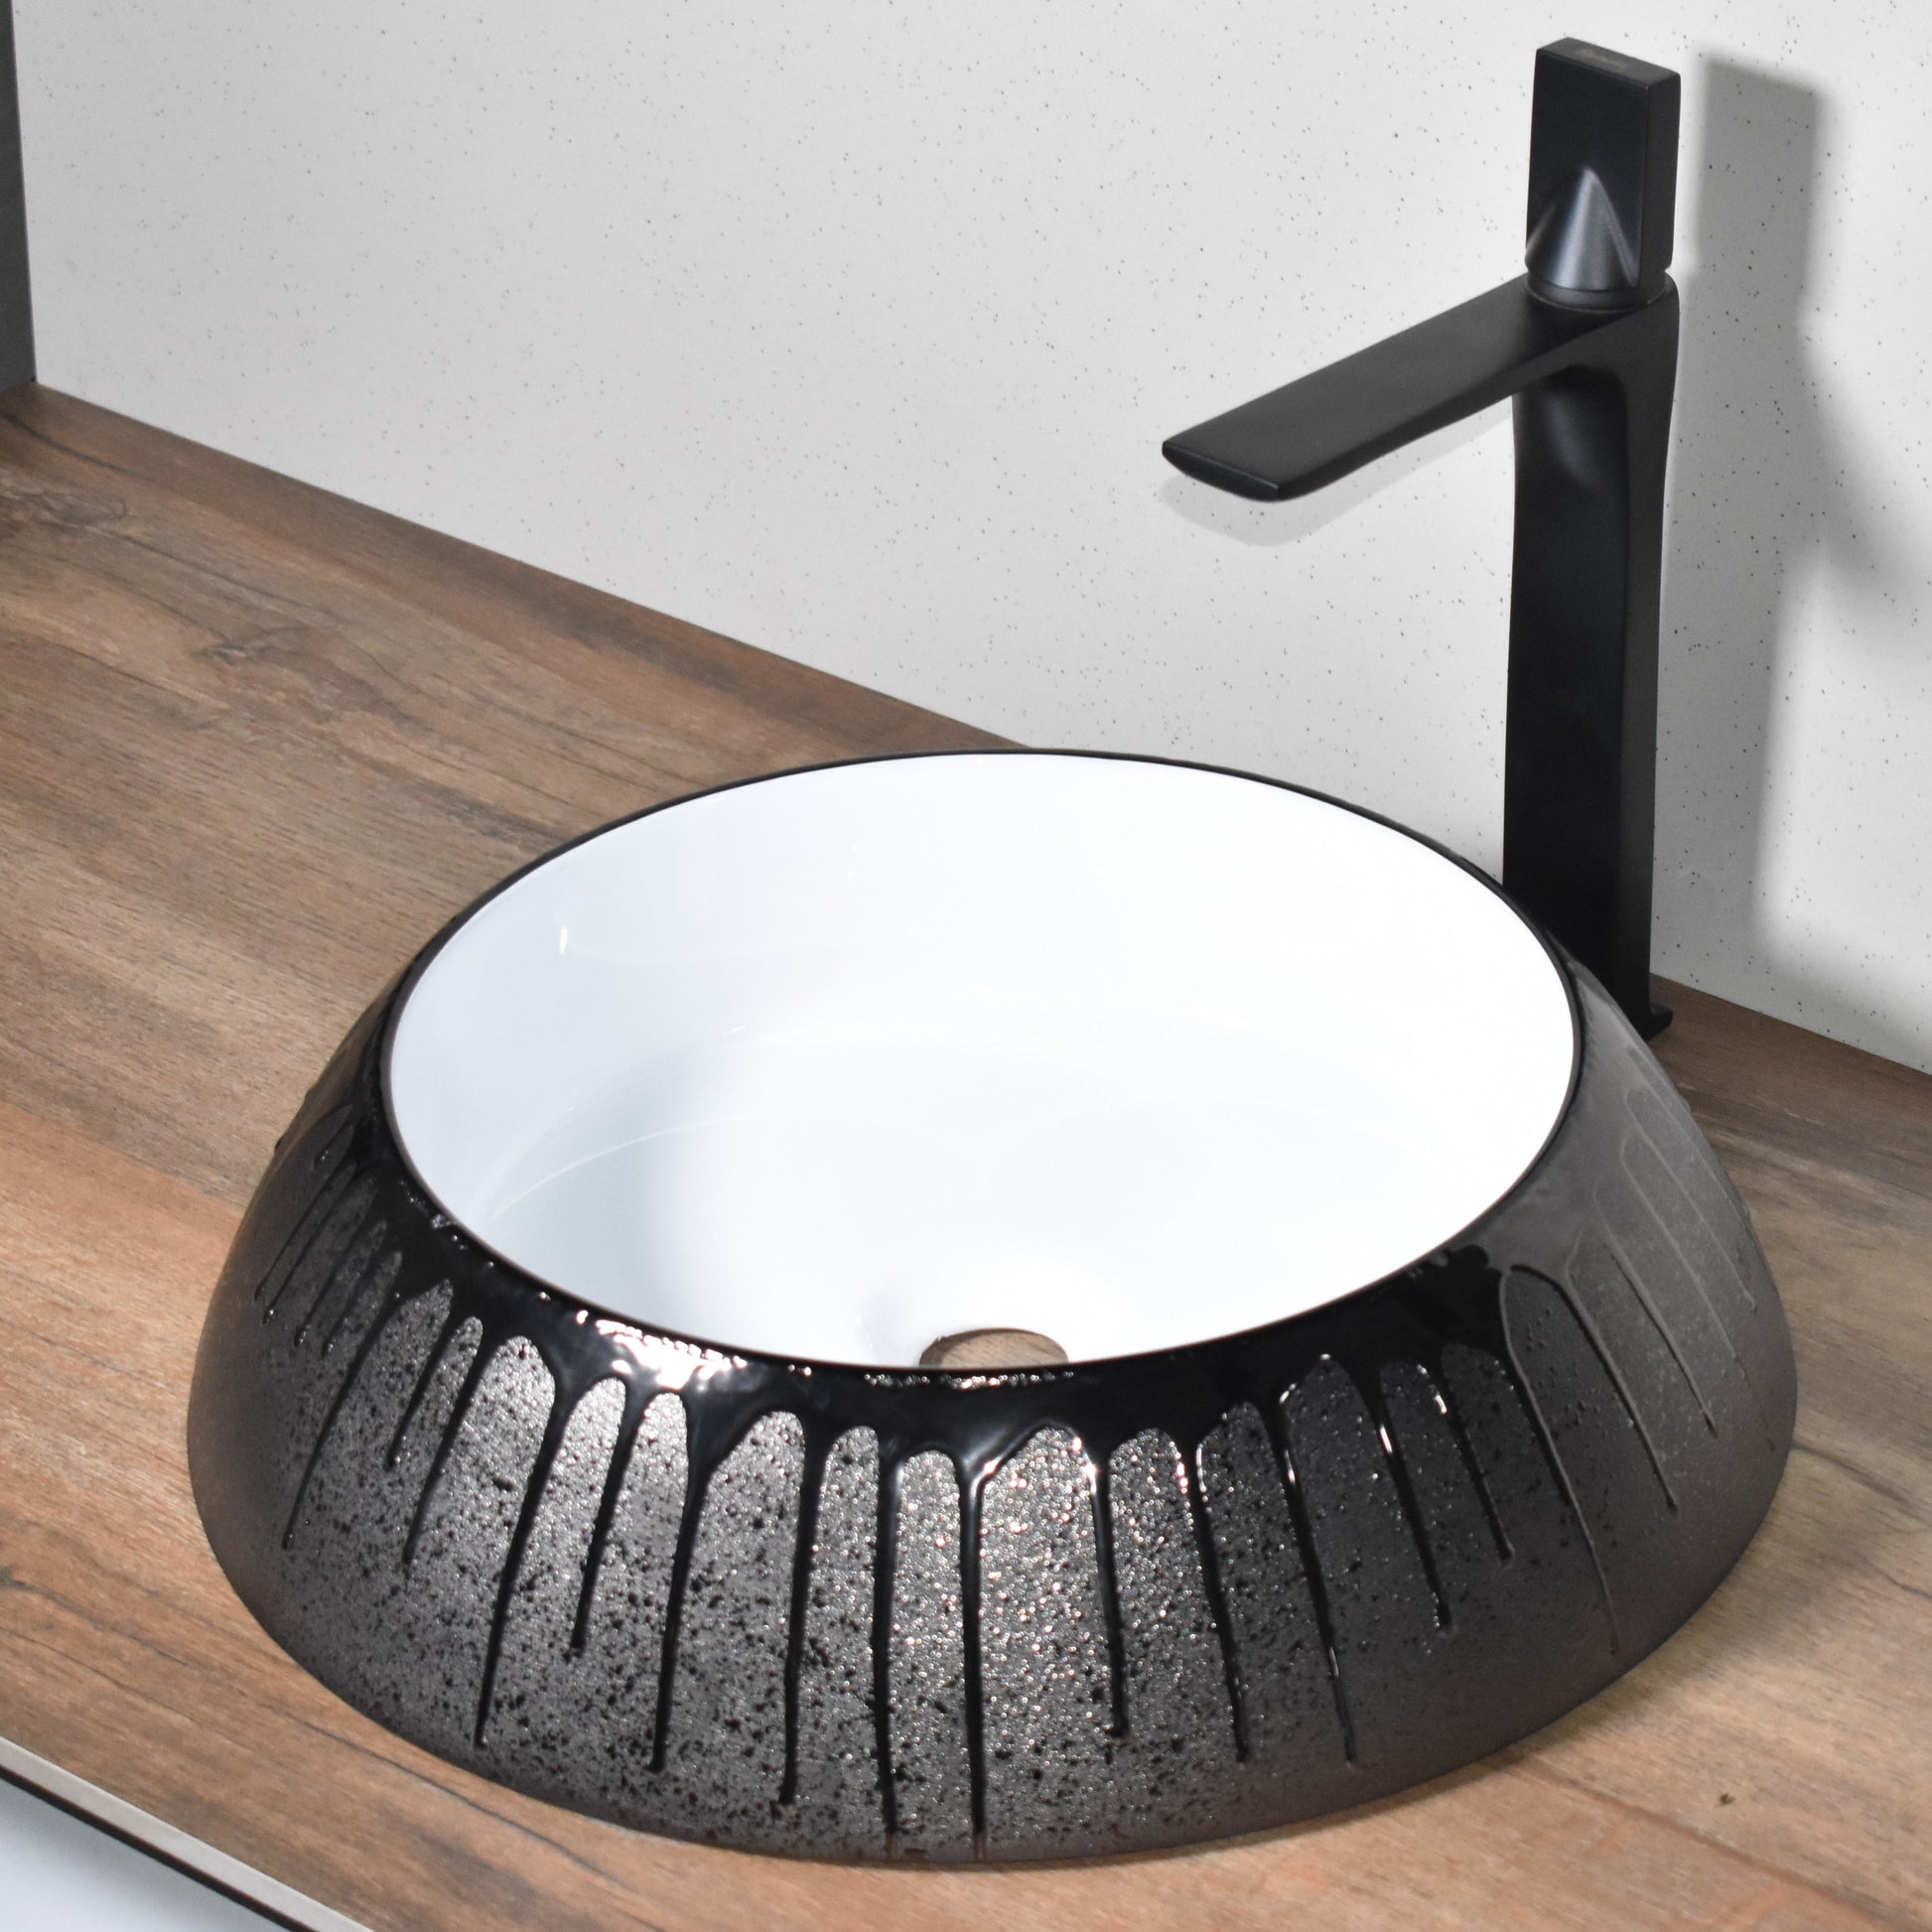 InArt Ceramic Counter or Table Top Wash Basin Black 46x46 CM - InArt-Studio